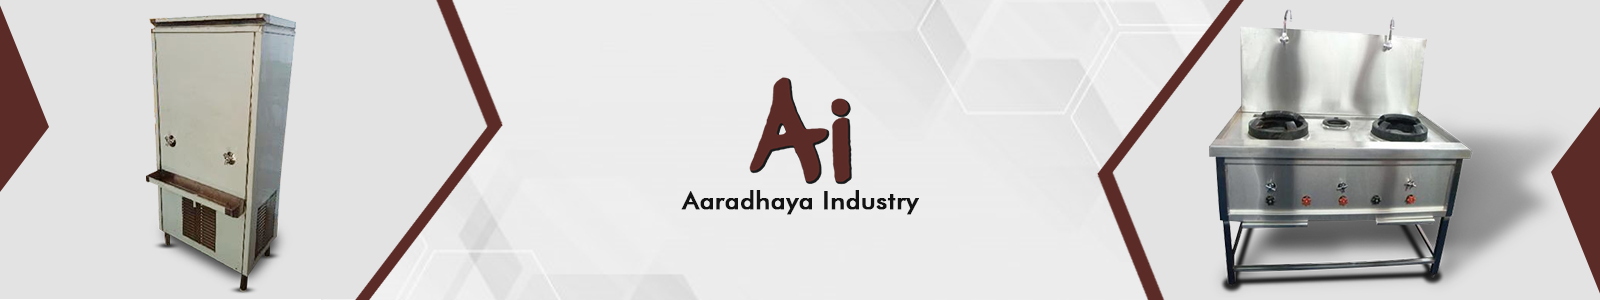 Aaradhya industries